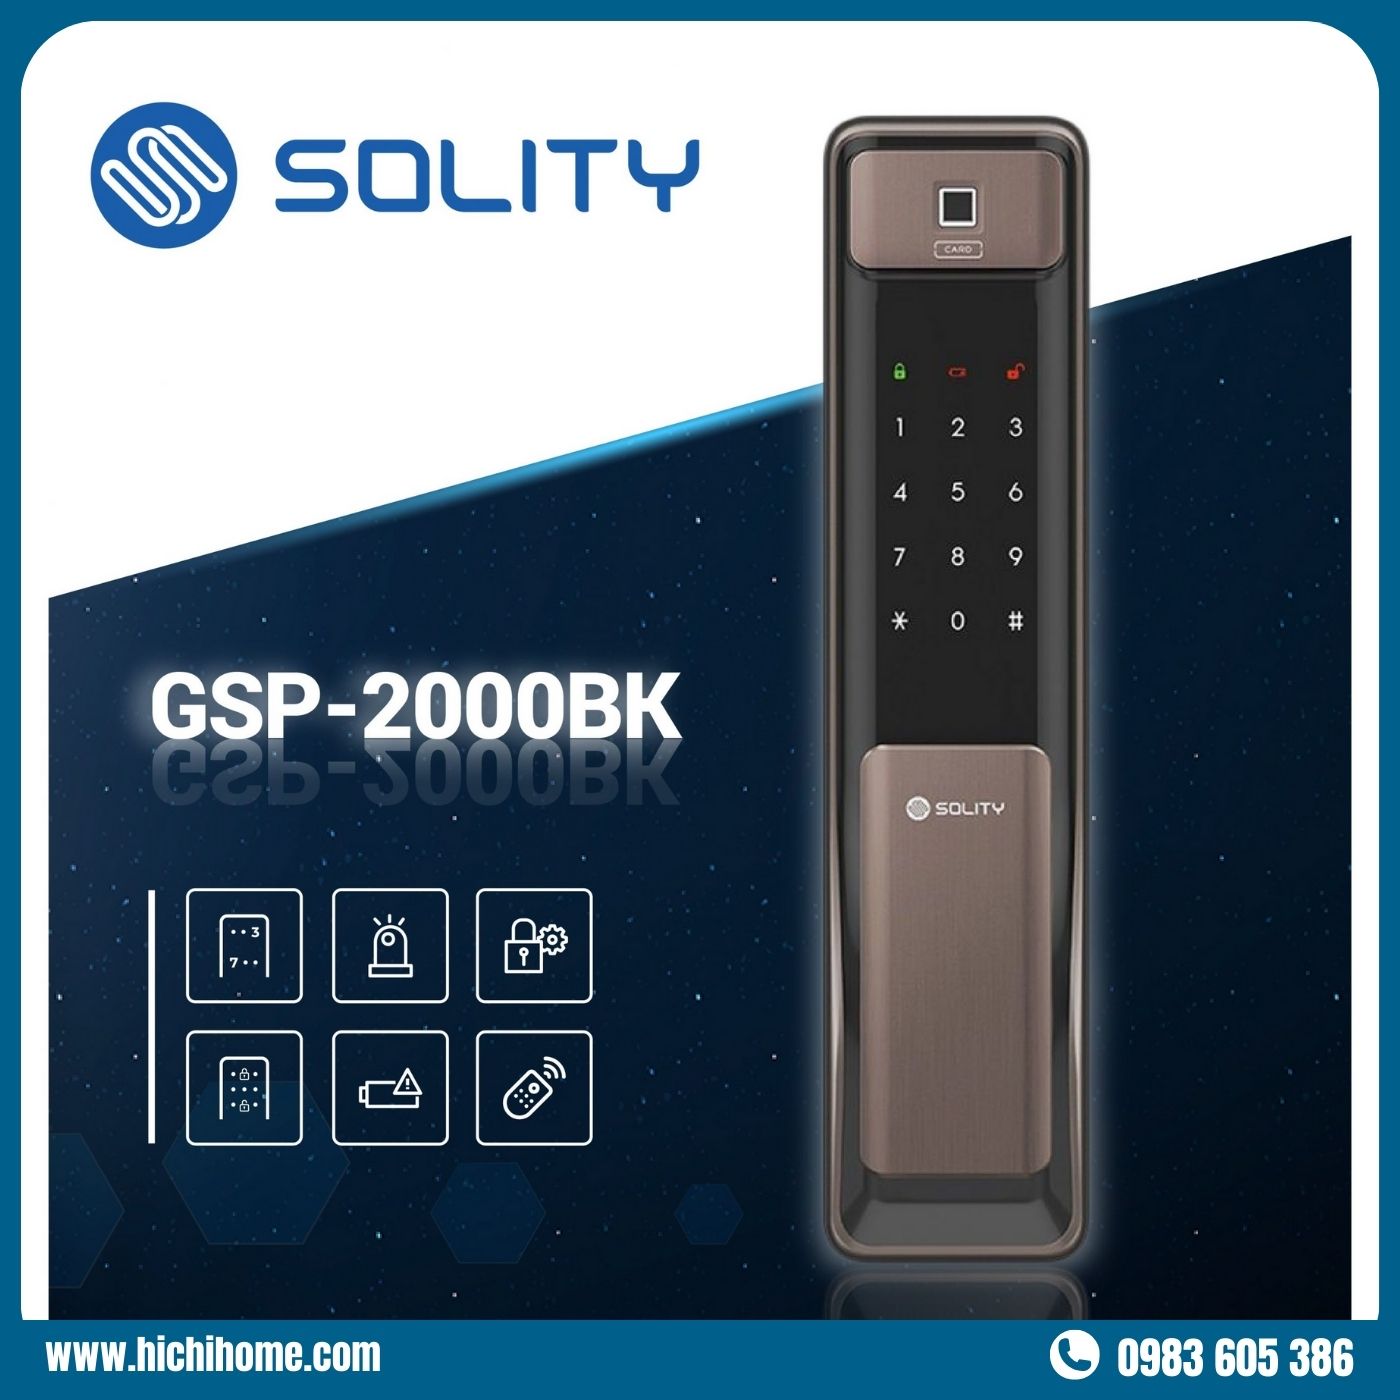 khóa thông minh Solity GSP-2000BK cho cửa nhà